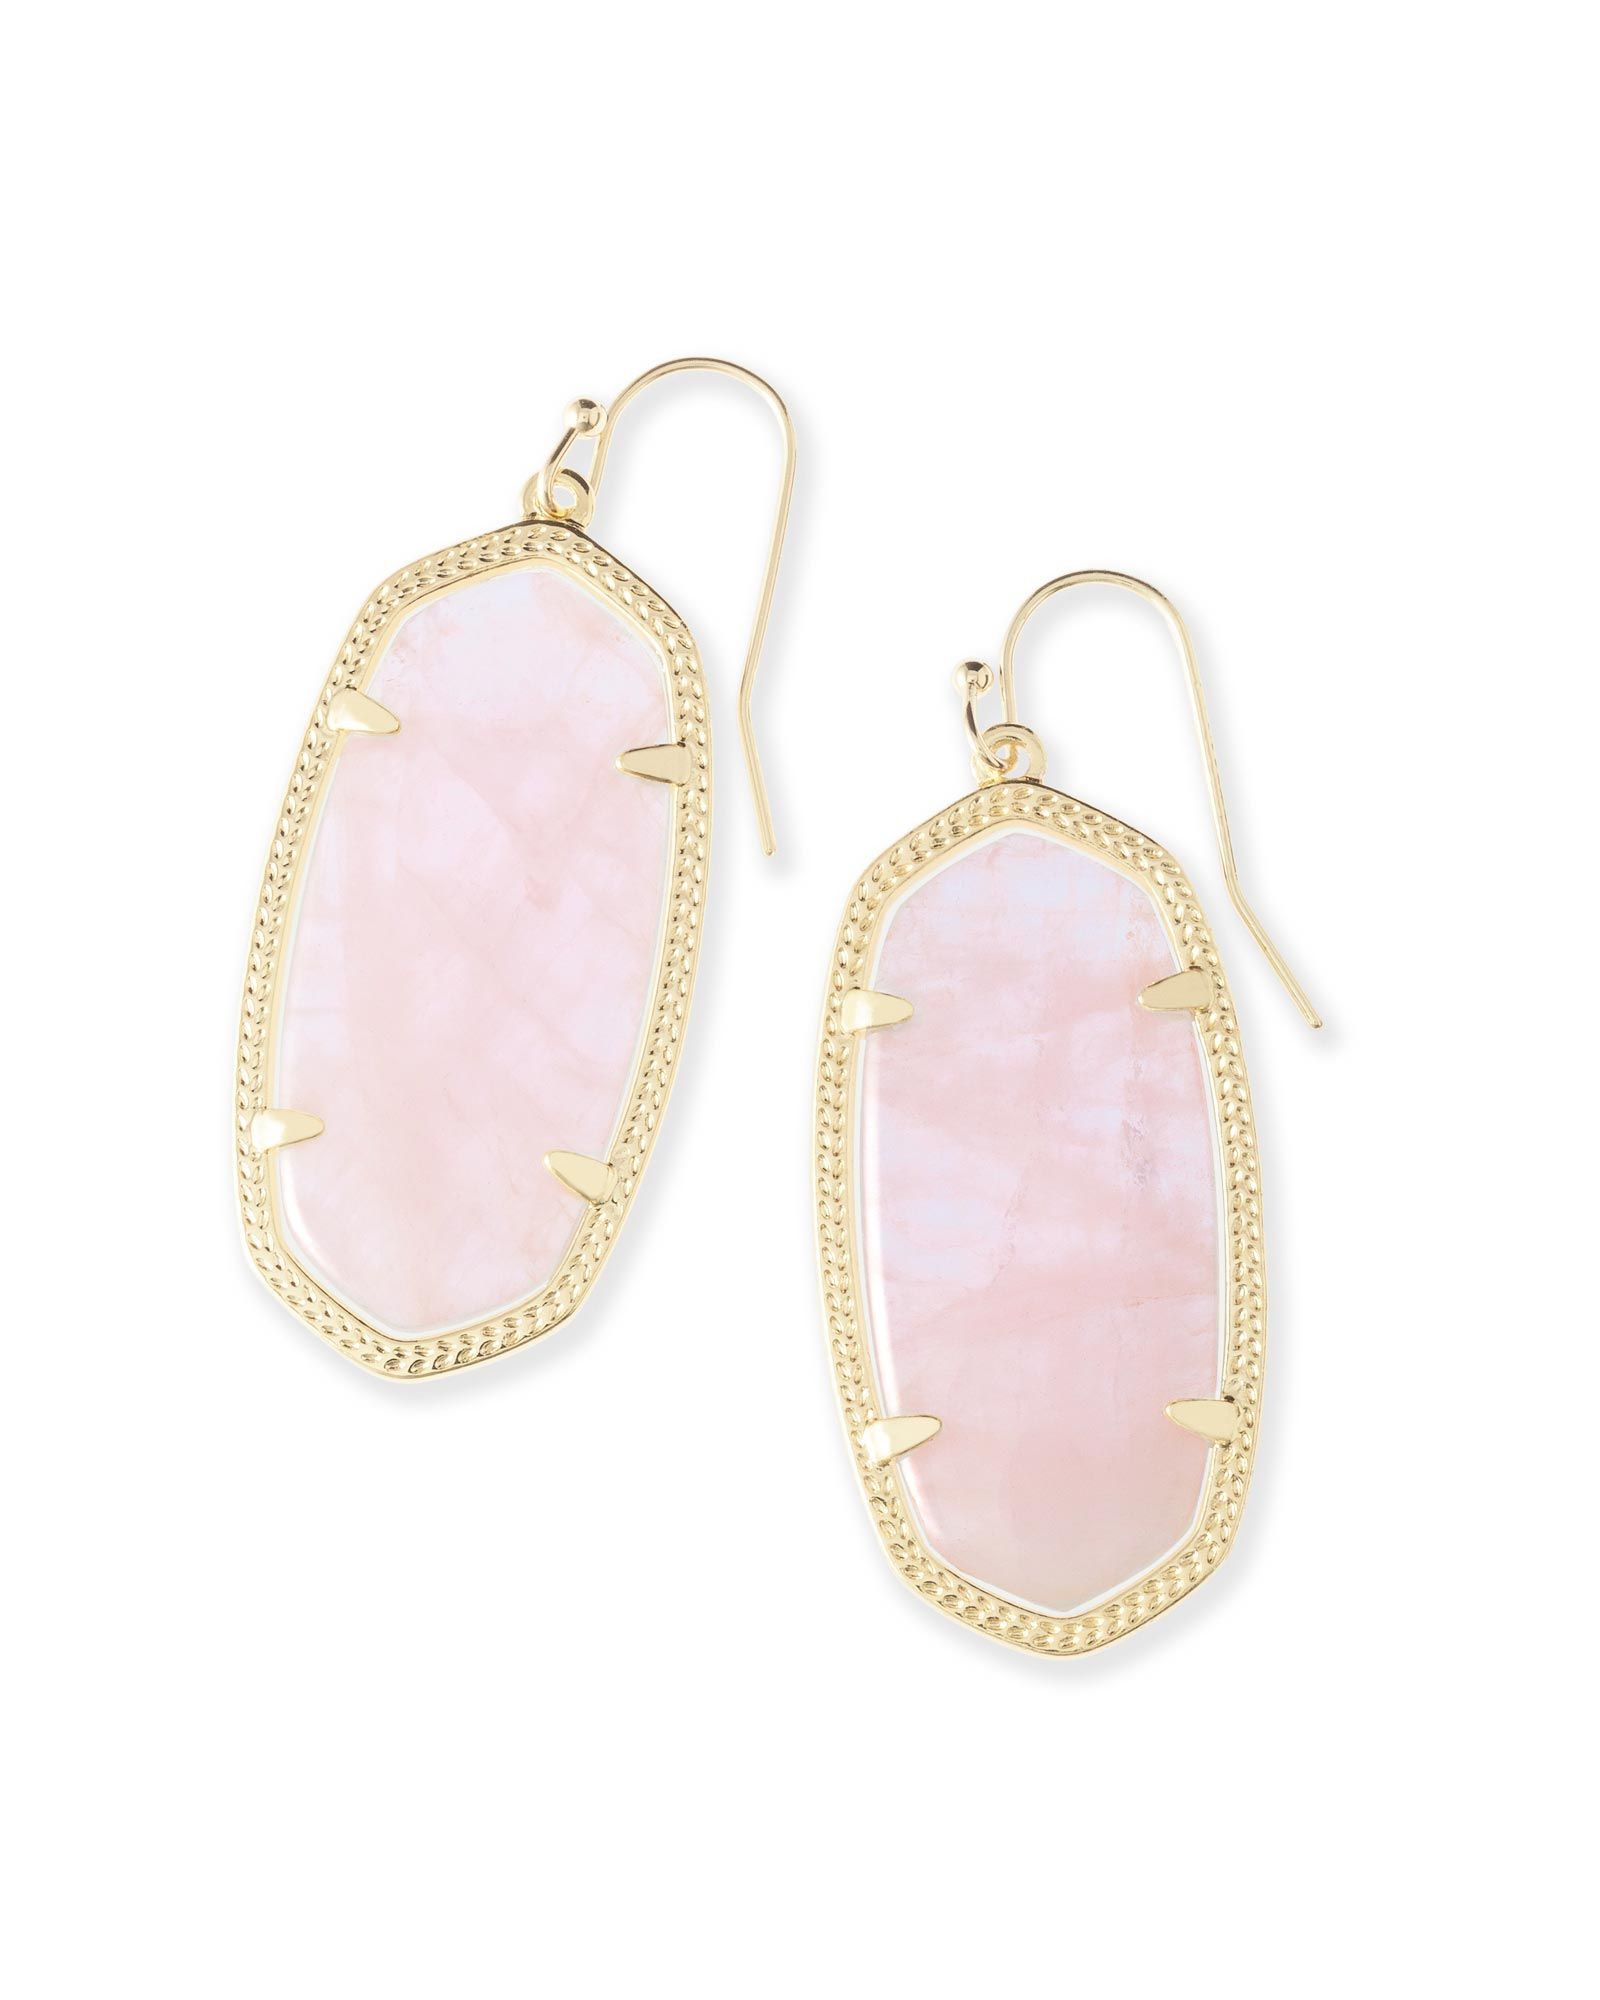 Elle Gold Drop Earrings in White Pearl | Kendra Scott | Kendra Scott